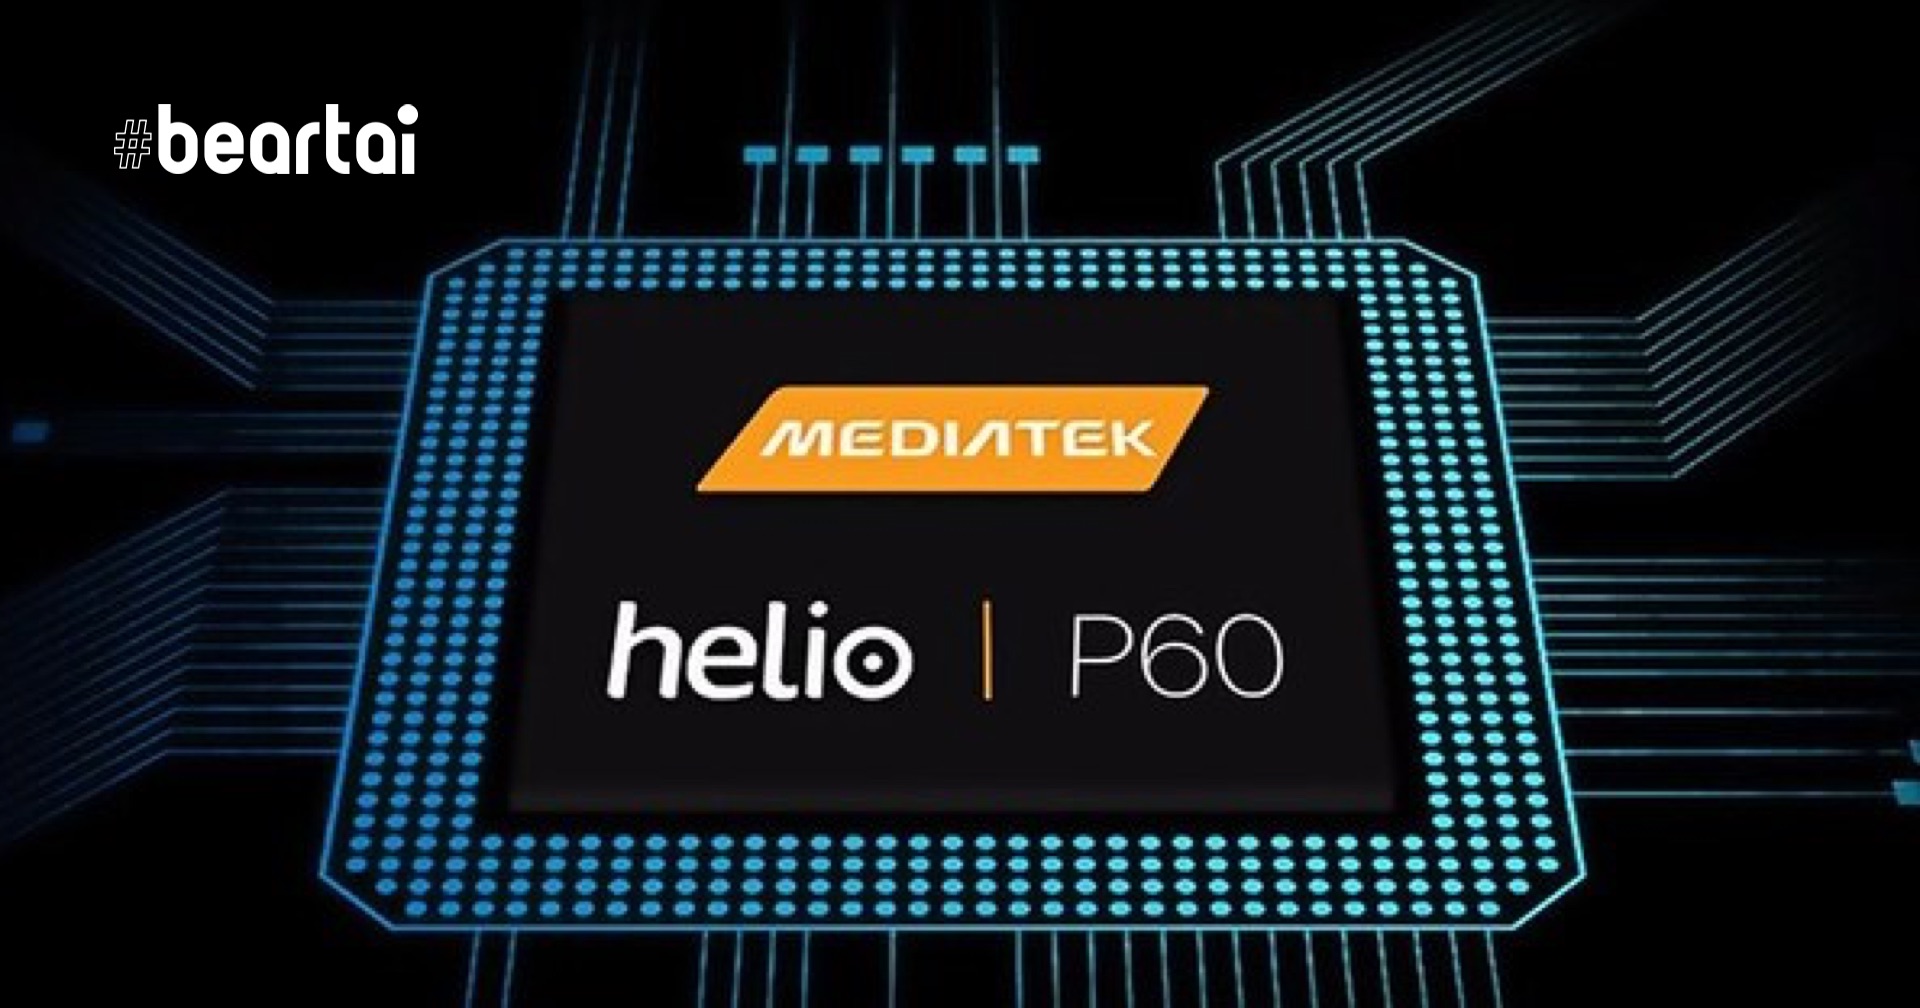 MediaTek ทำตามคำสั่งรัฐบาลสหรัฐฯ ระงับการขายชิปเซ็ตให้ Huawei